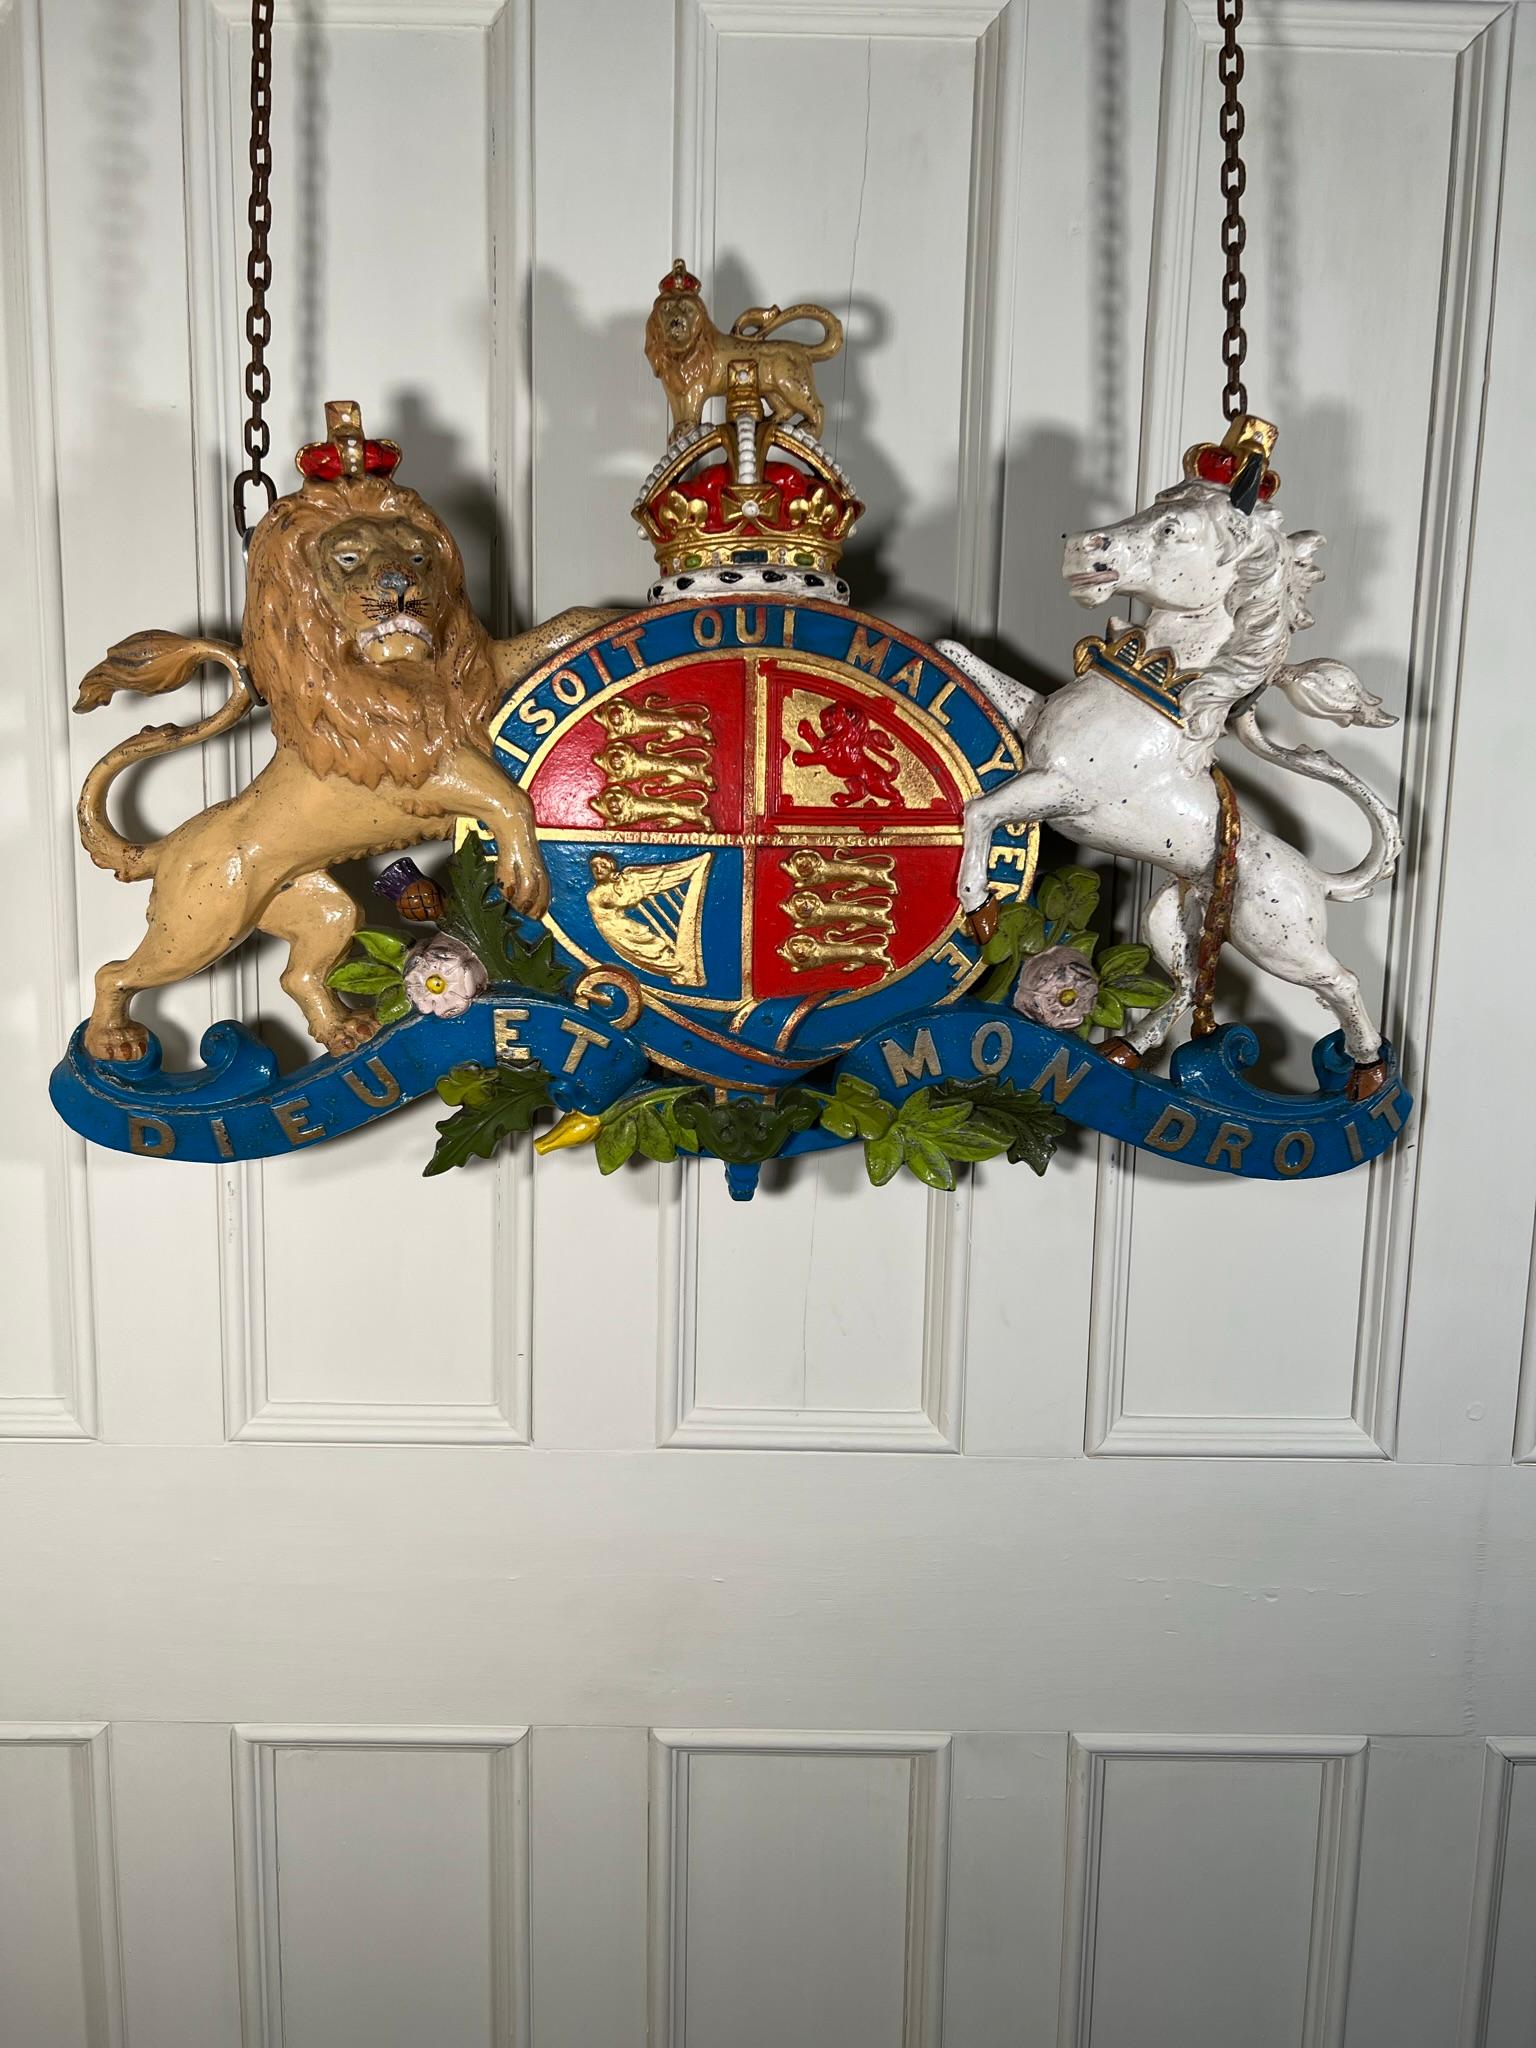 macfarlane coat of arms